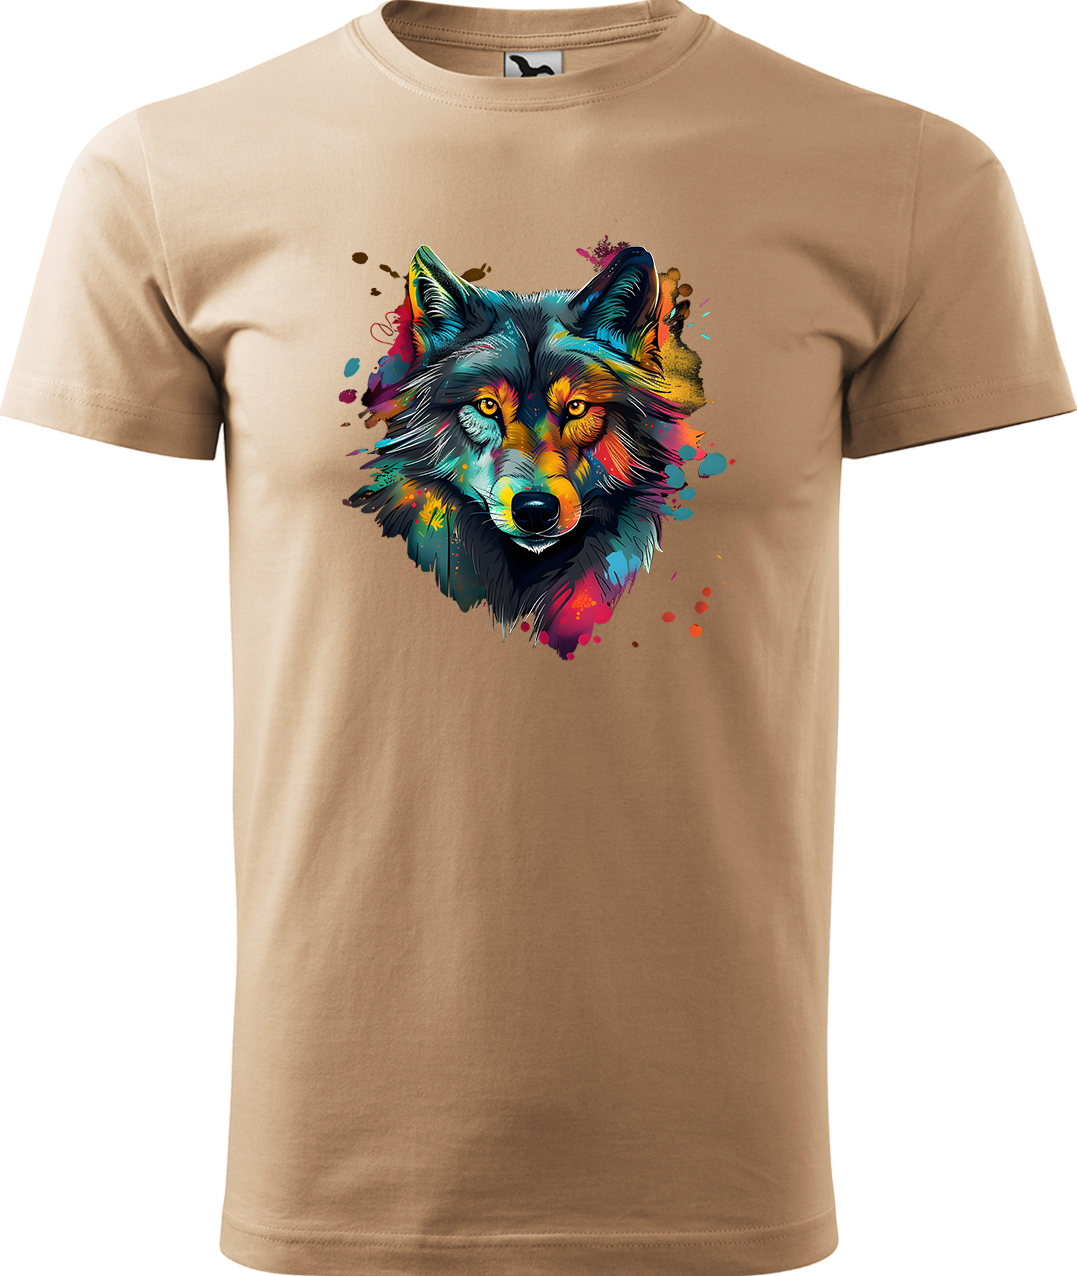 Pánské tričko s vlkem - Malovaný vlk Velikost: M, Barva: Písková (08), Střih: pánský